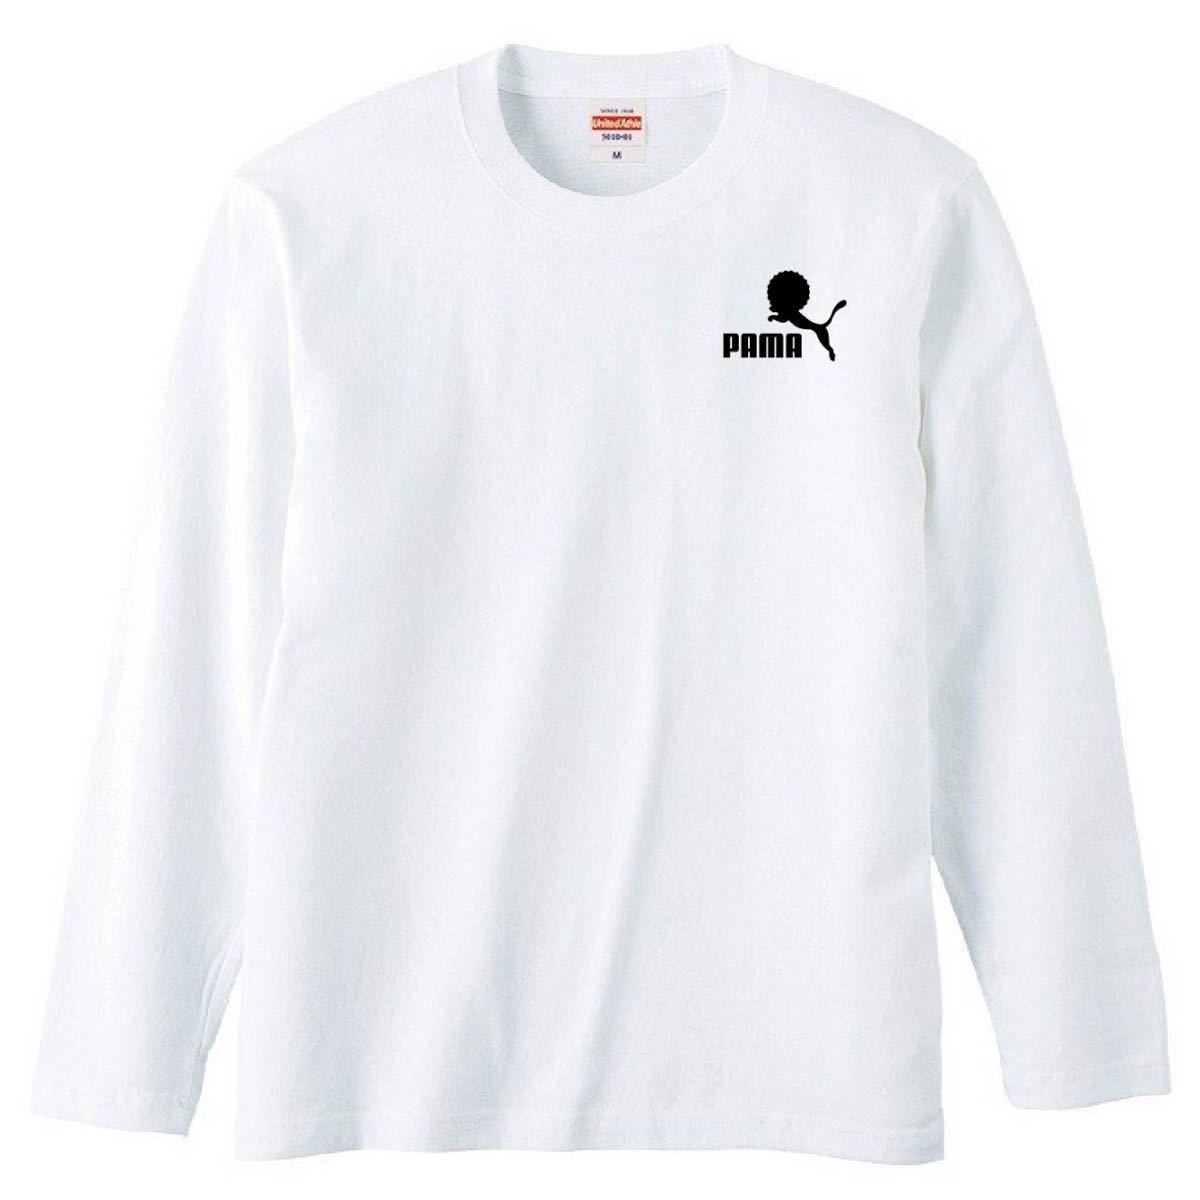 【送料無料】【新品】PAMA パーマ ワンポイント 長袖 Tシャツ ロンT パロディ おもしろ プレゼント メンズ 白 Mサイズ_画像1